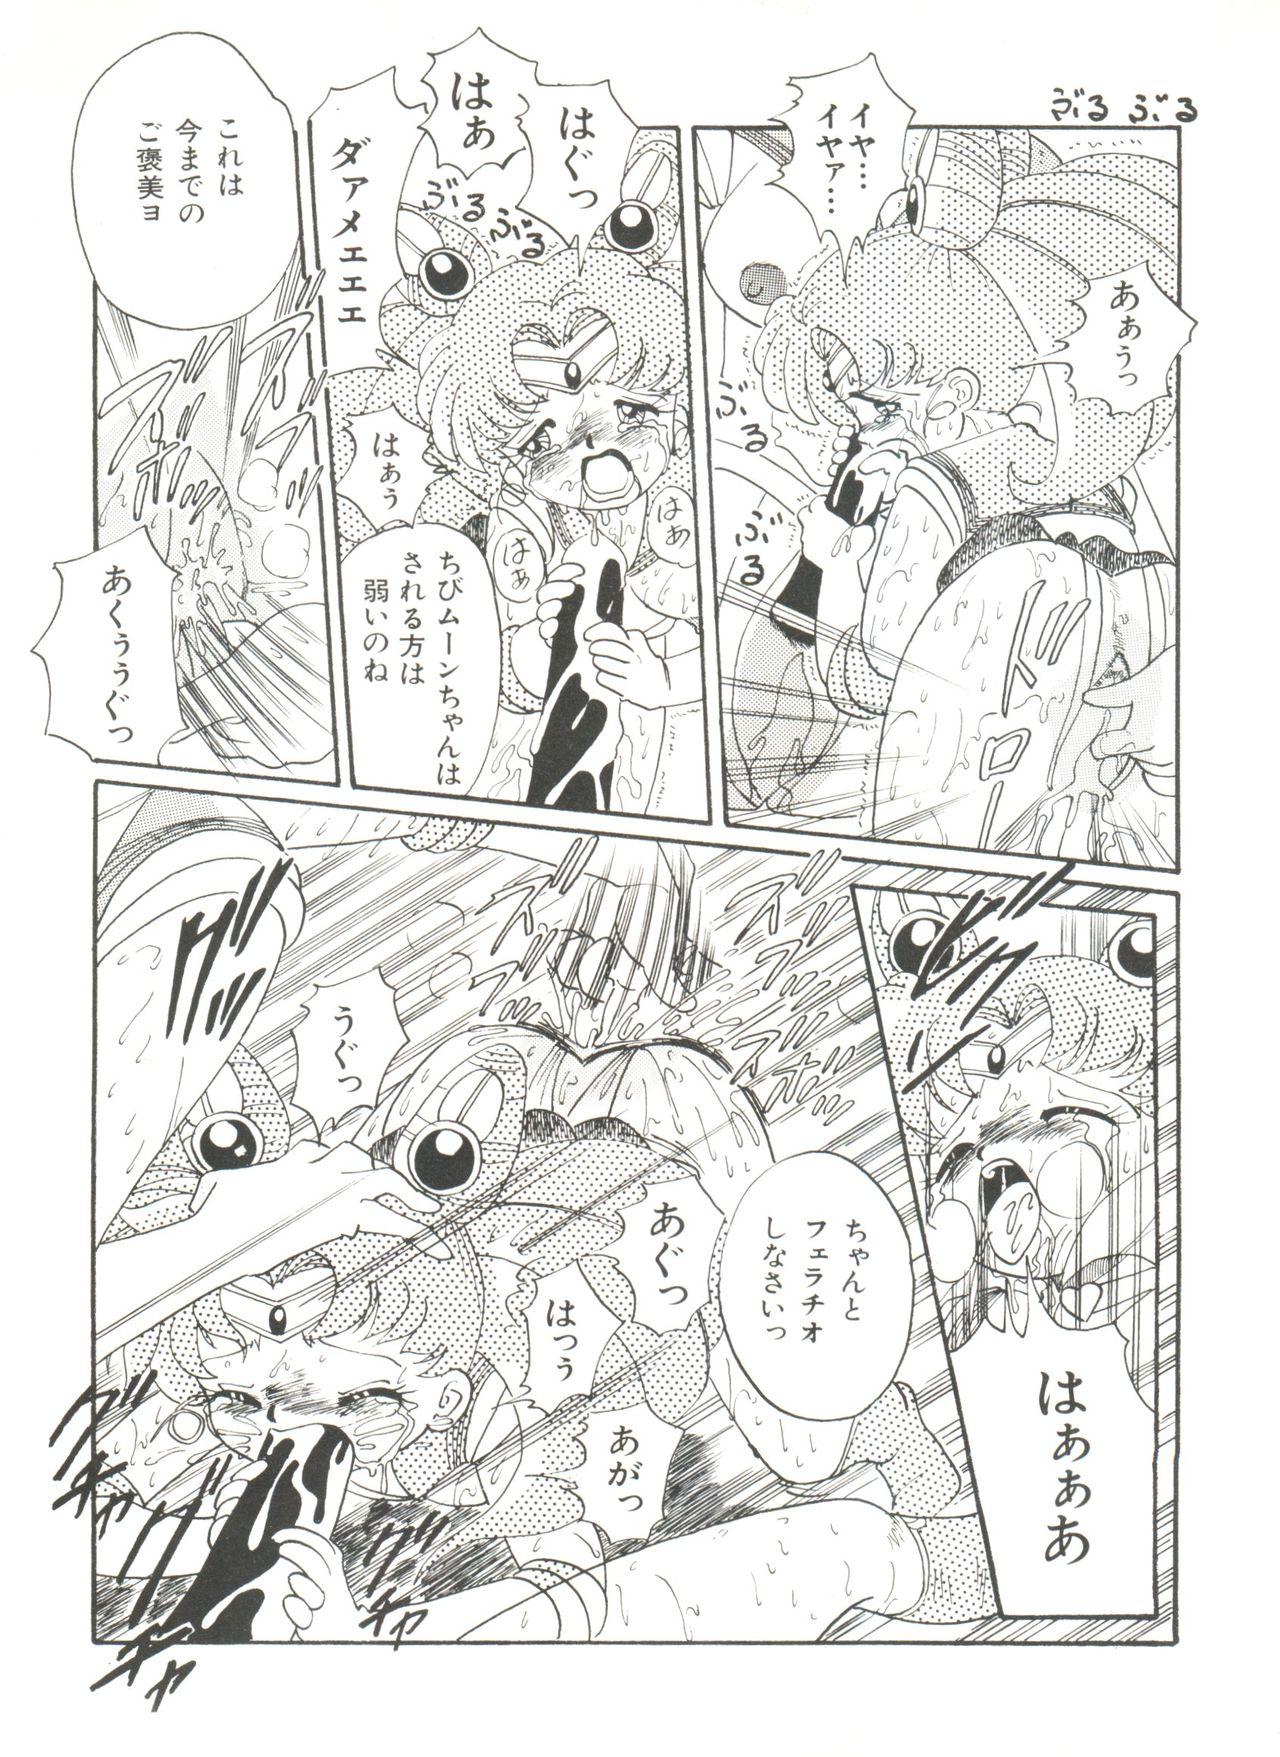 Bishoujo Doujinshi Anthology 18 - Moon Paradise 11 Tsuki no Rakuen 54